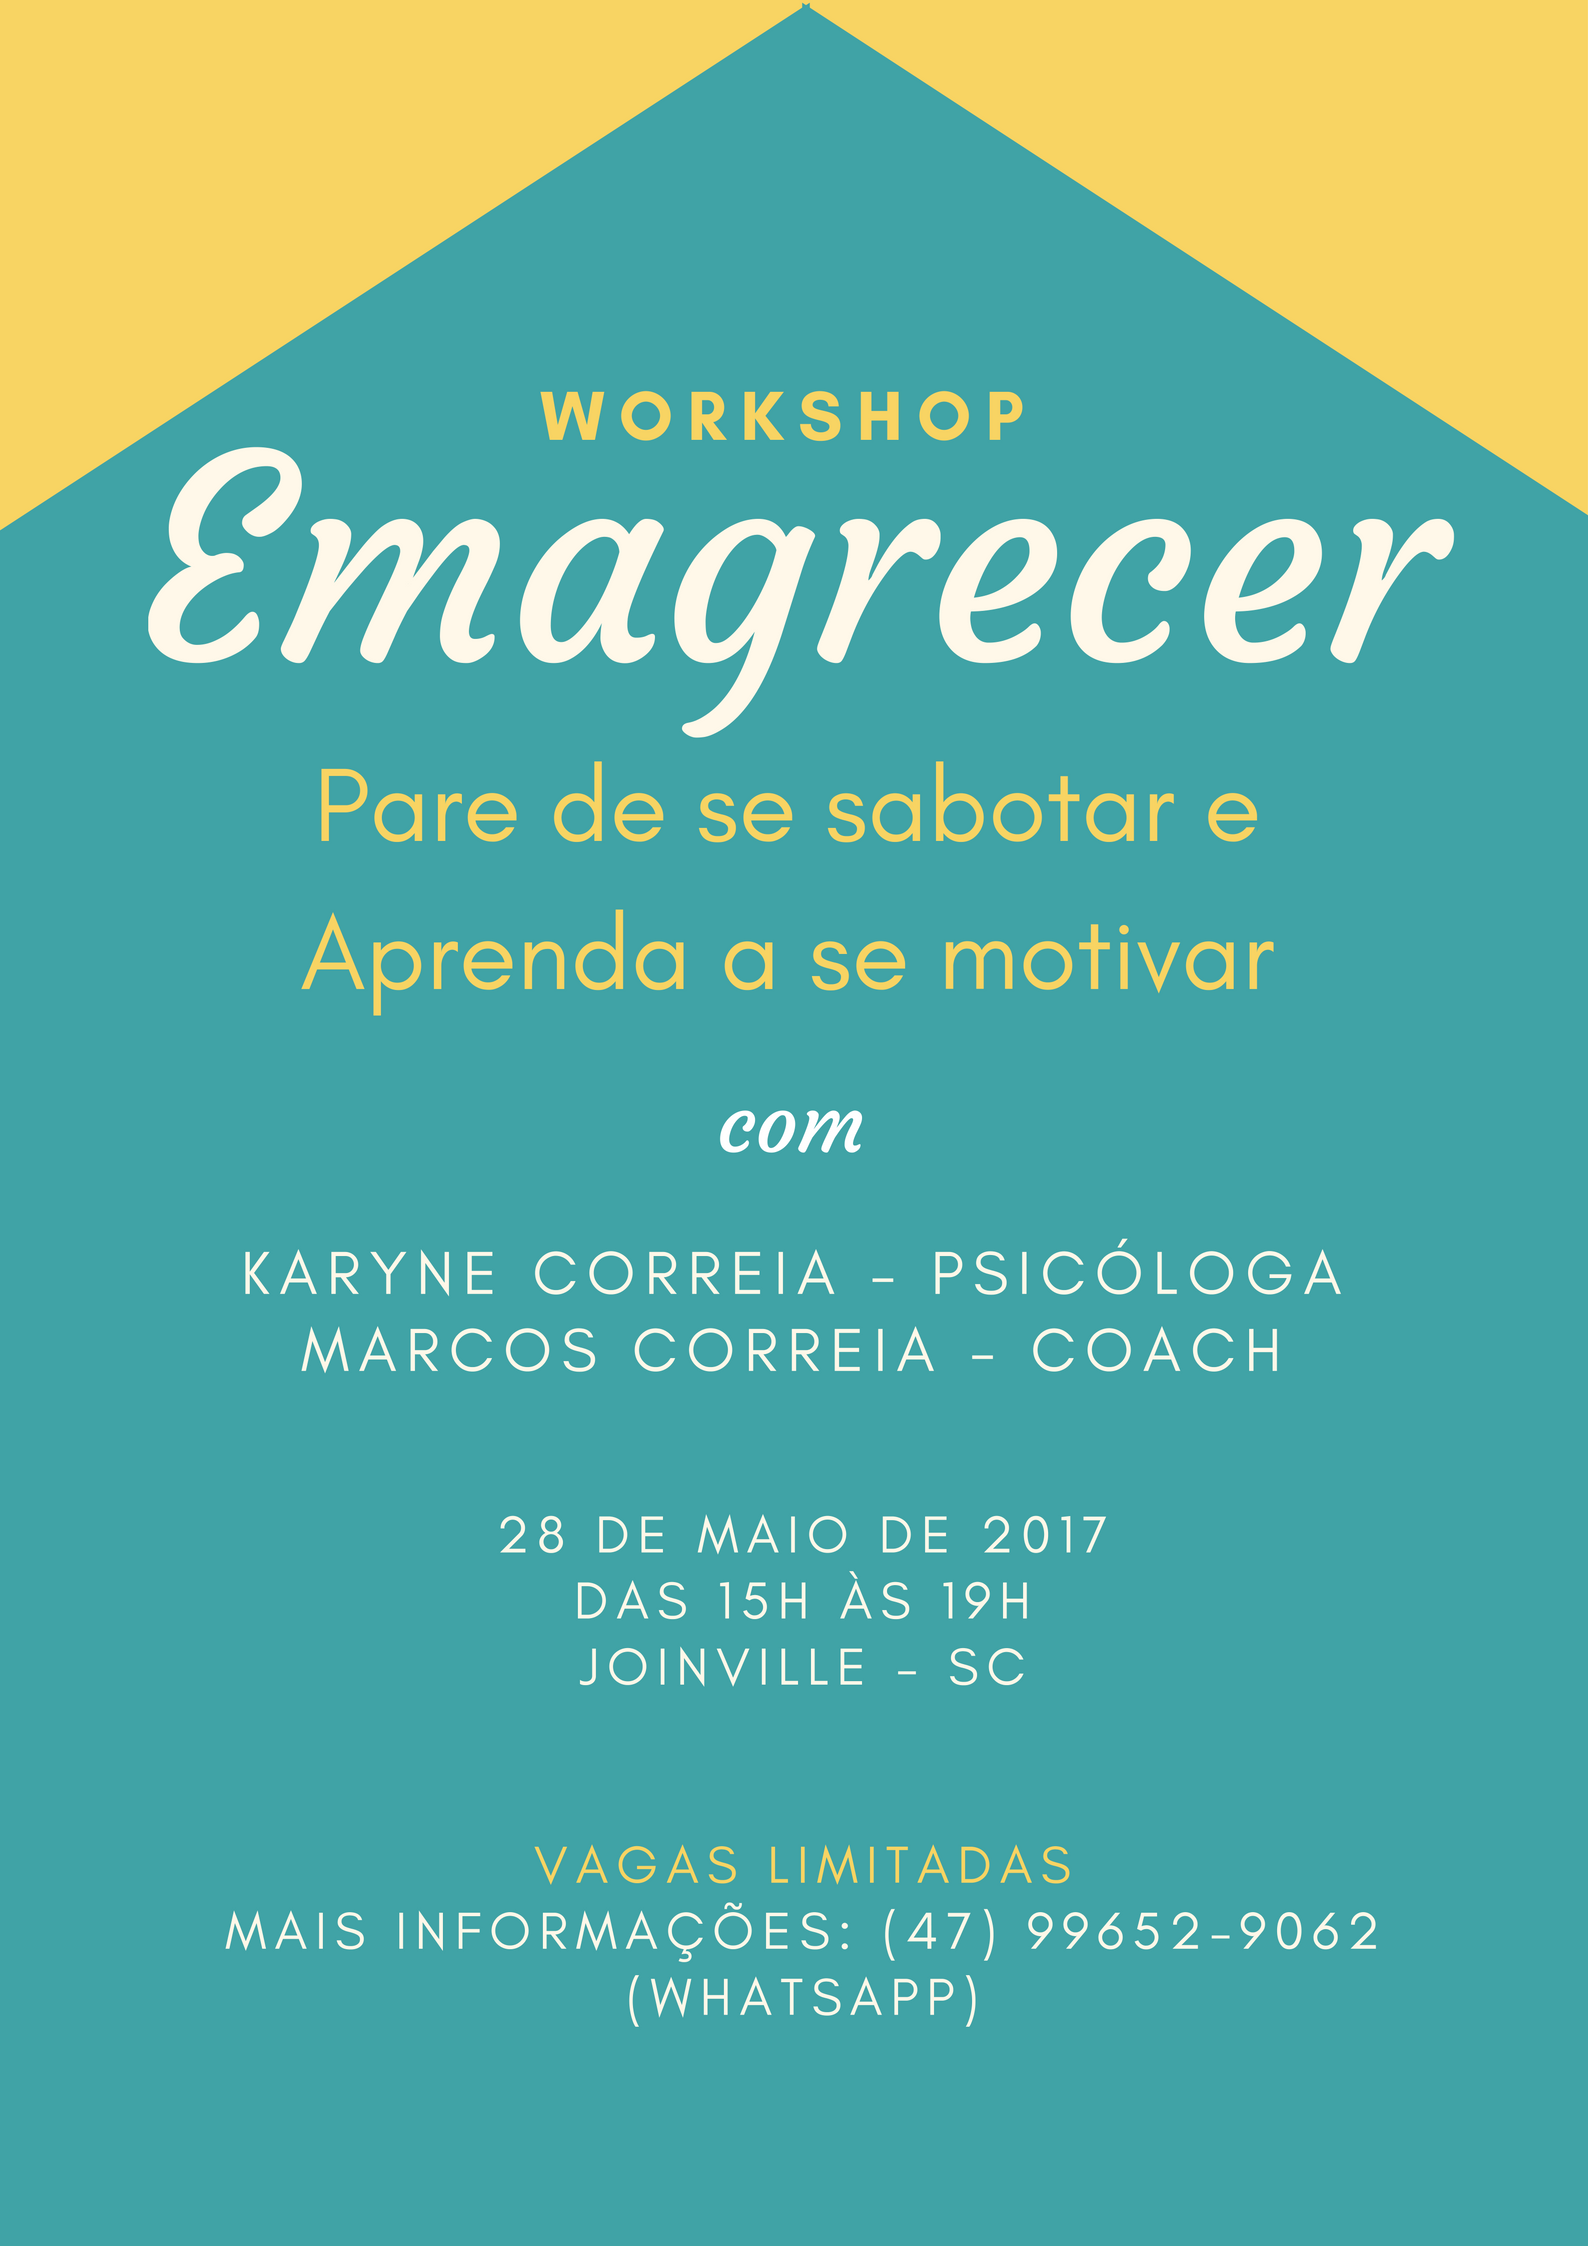 Workshop EMAGRECER em Joinville